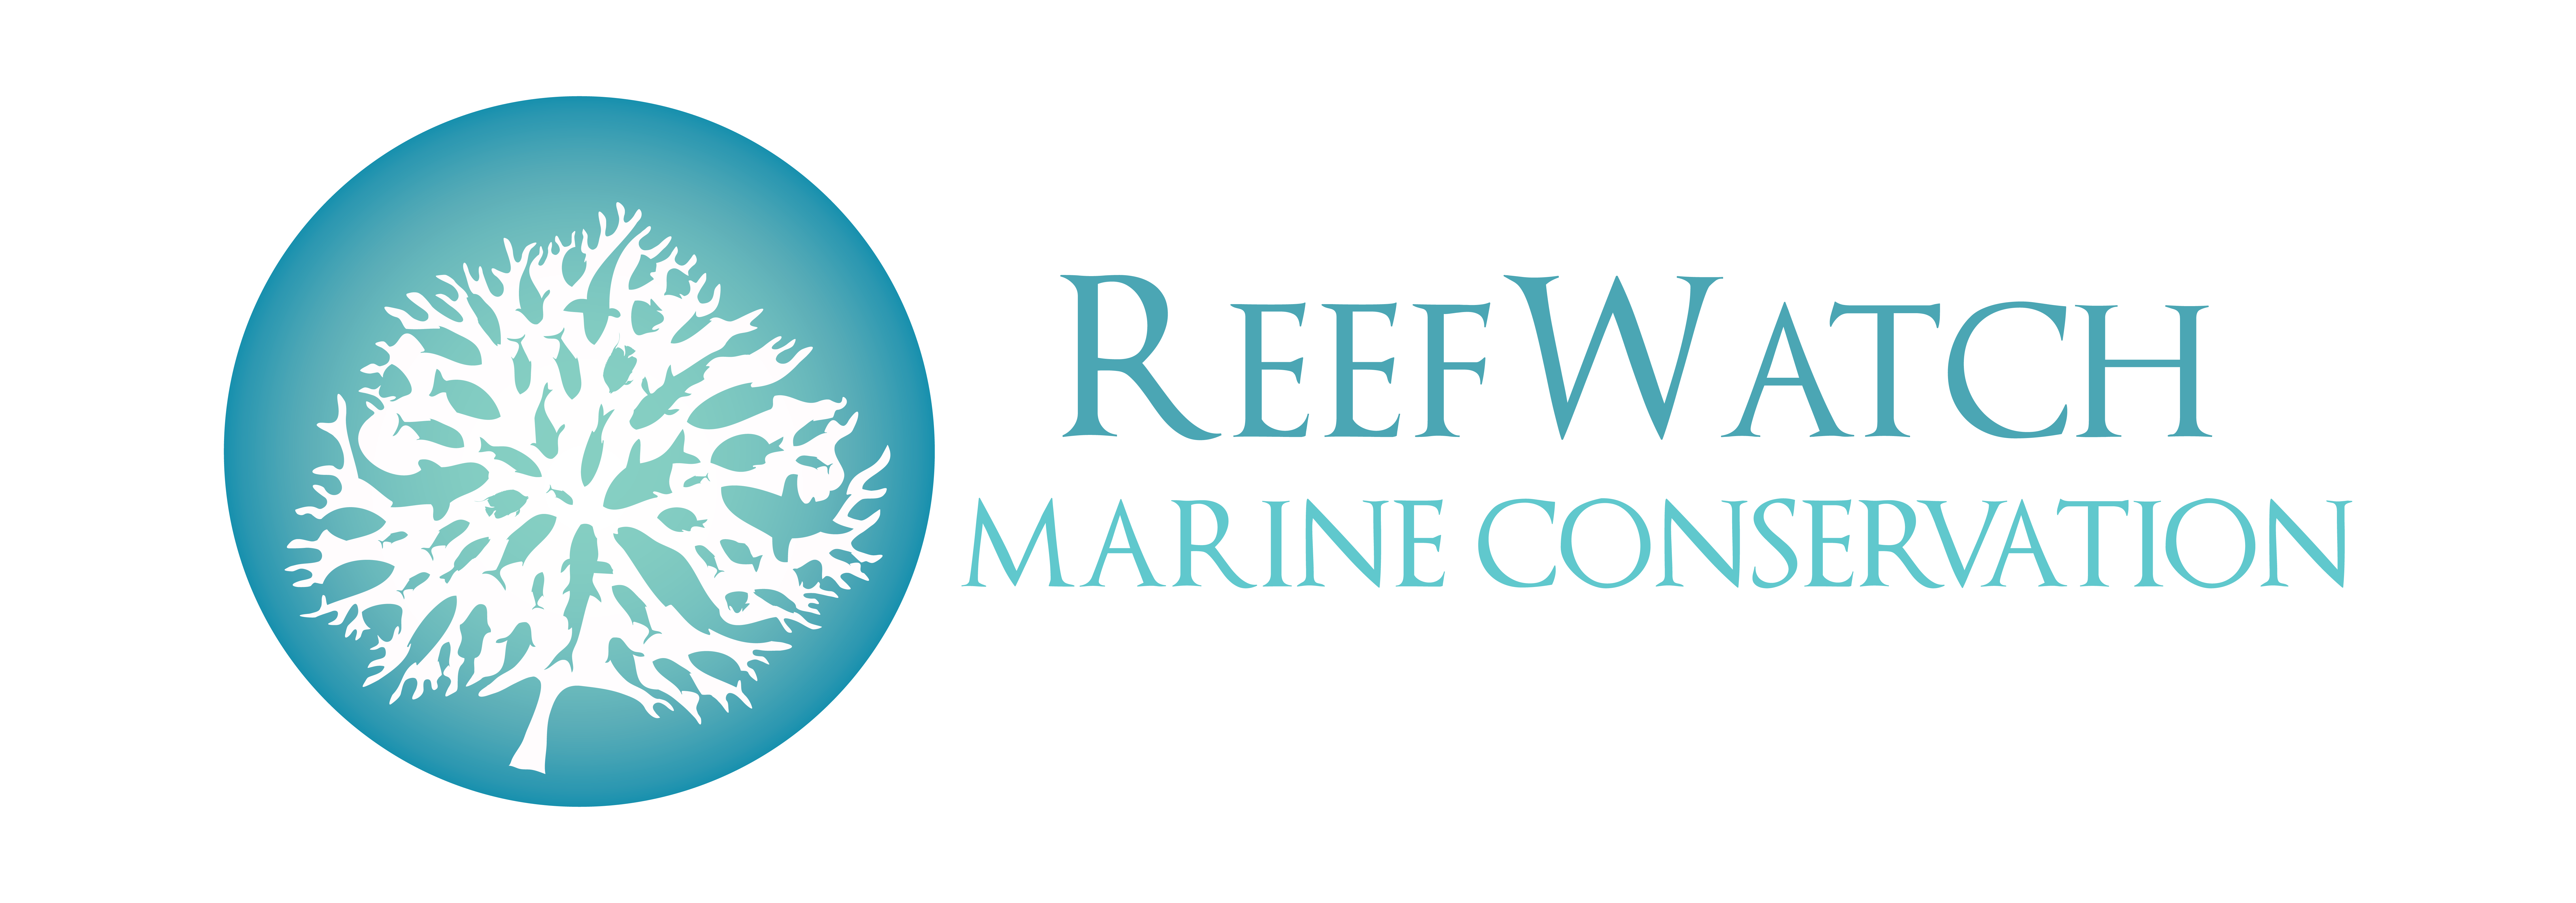 ReefWatch Marine Conservation logo